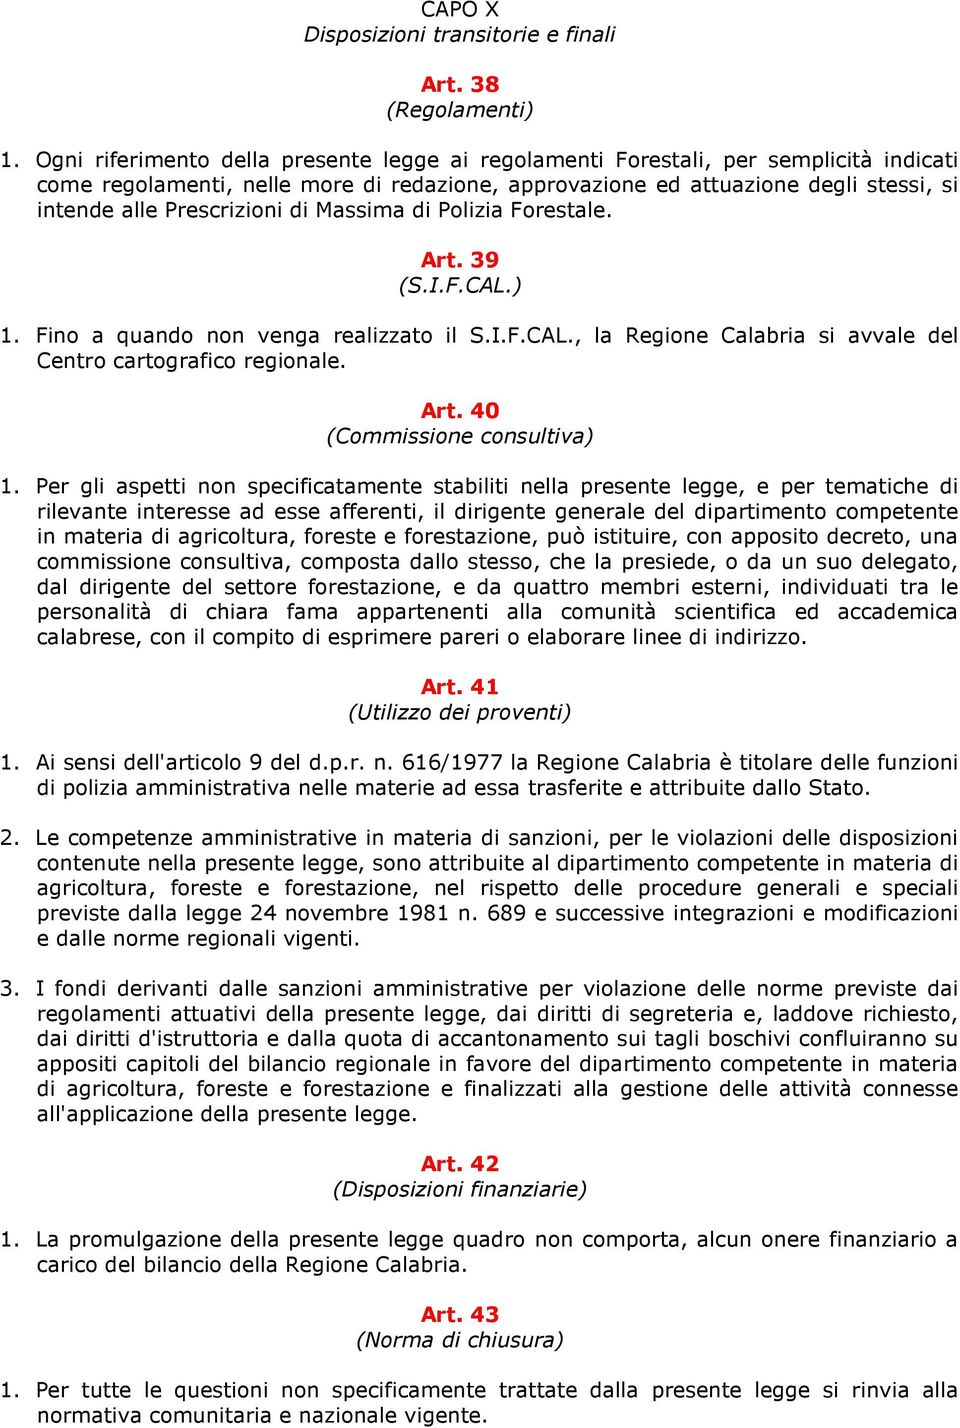 Prescrizioni di Massima di Polizia Forestale. Art. 39 (S.I.F.CAL.) 1. Fino a quando non venga realizzato il S.I.F.CAL., la Regione Calabria si avvale del Centro cartografico regionale. Art. 40 (Commissione consultiva) 1.